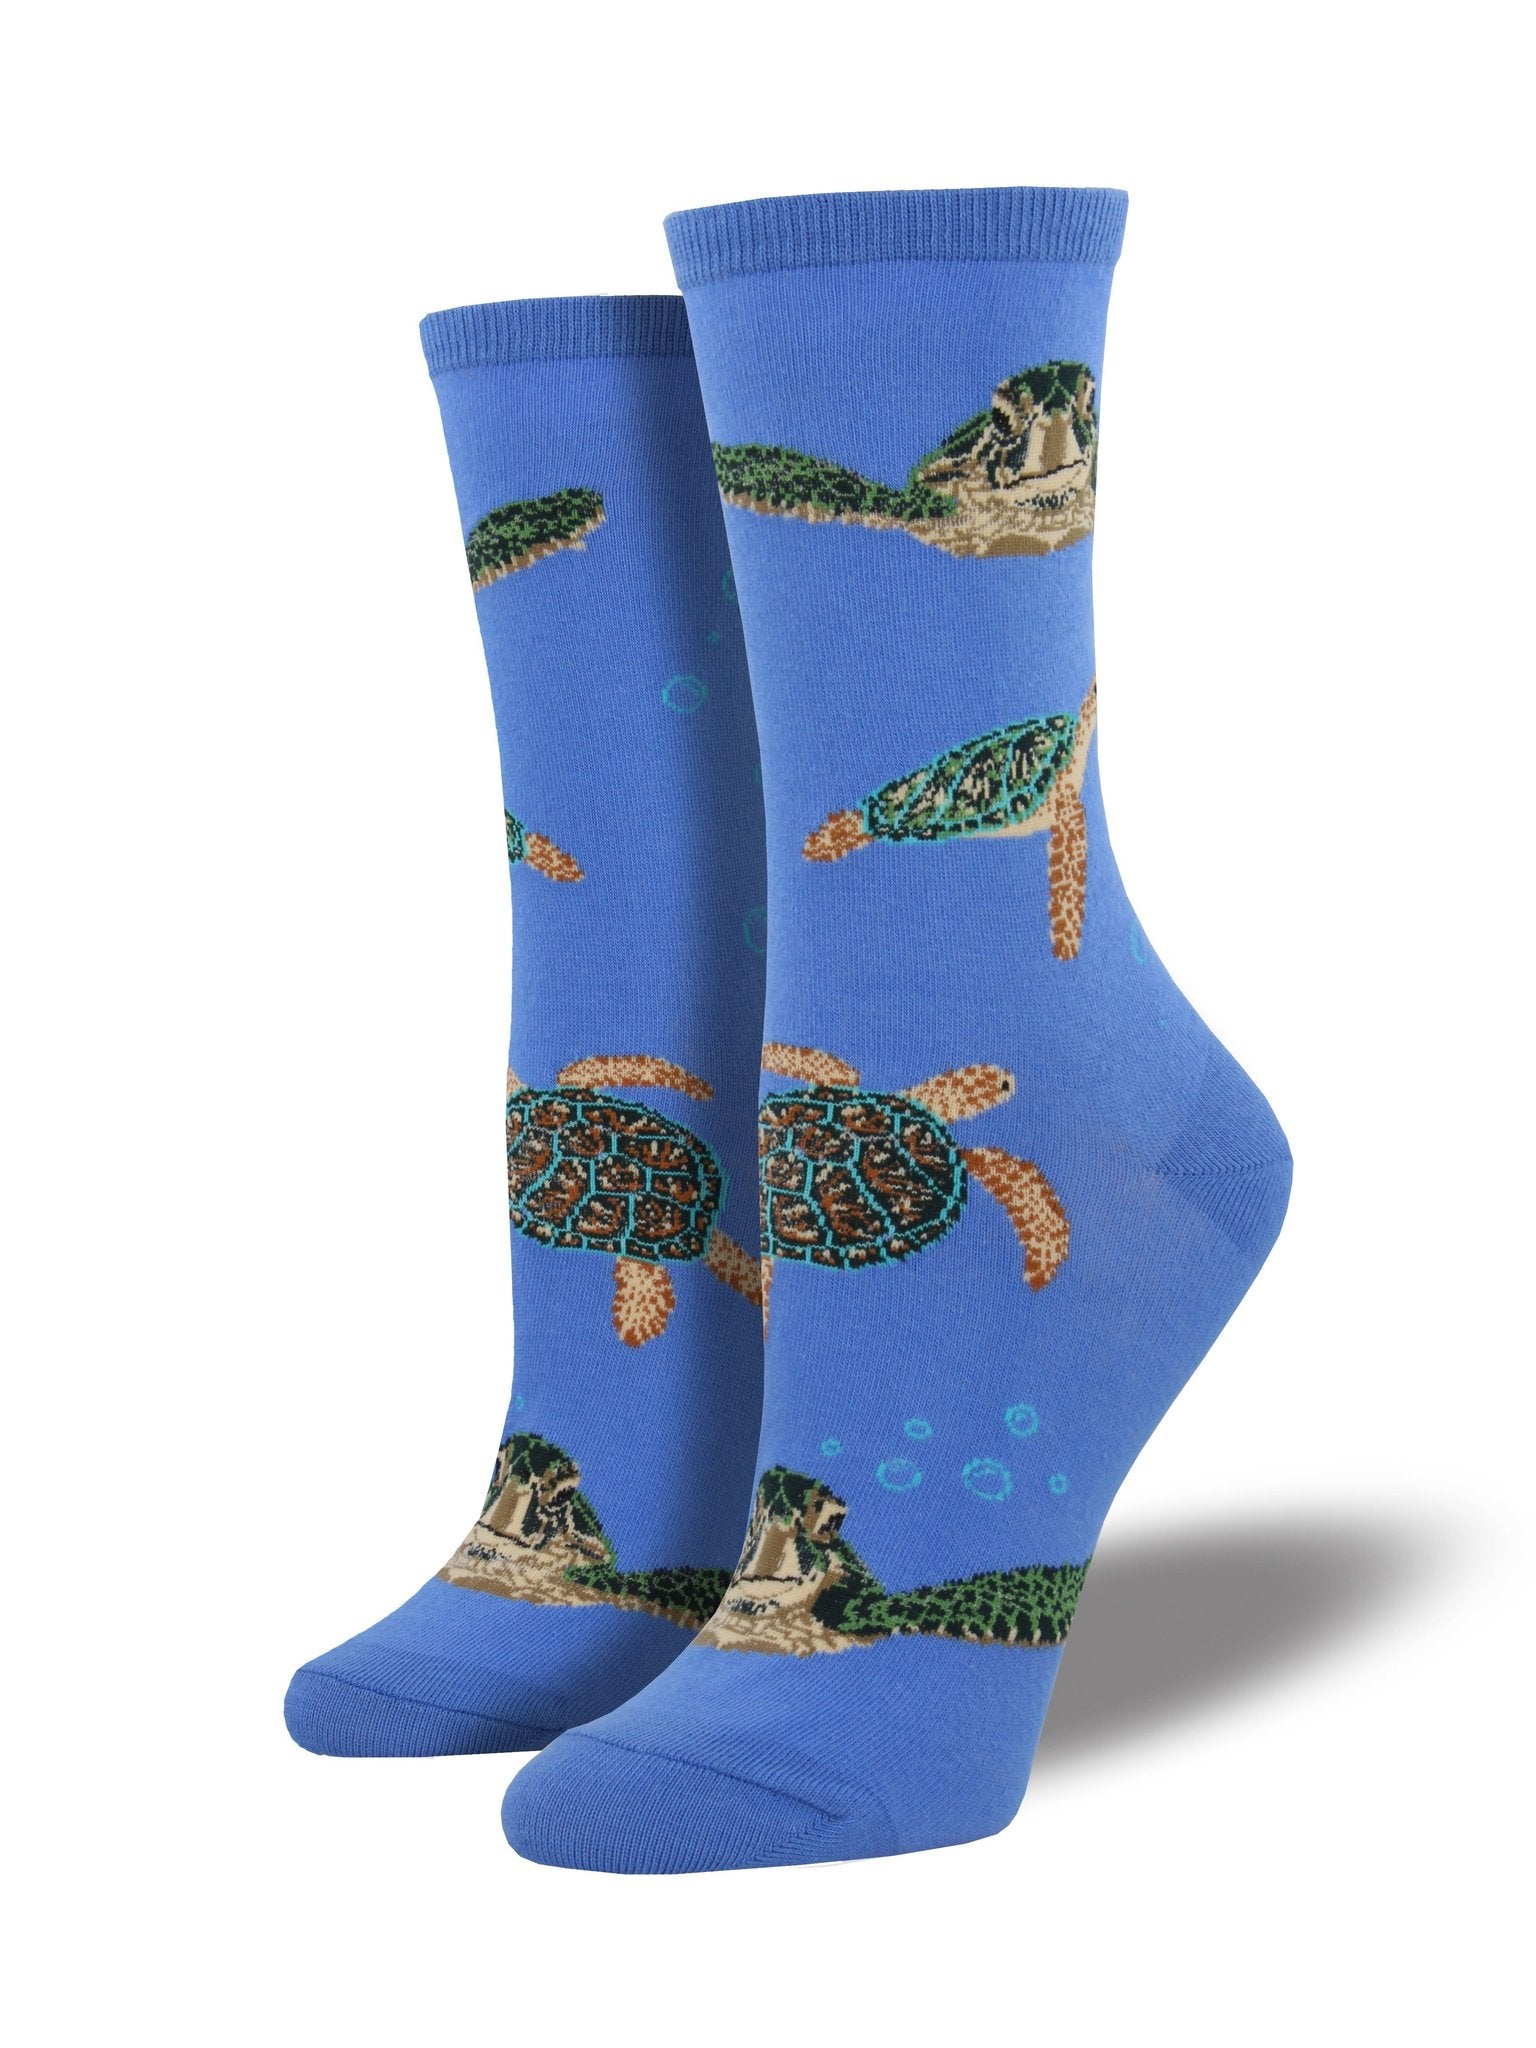 Sea Turtles Socks